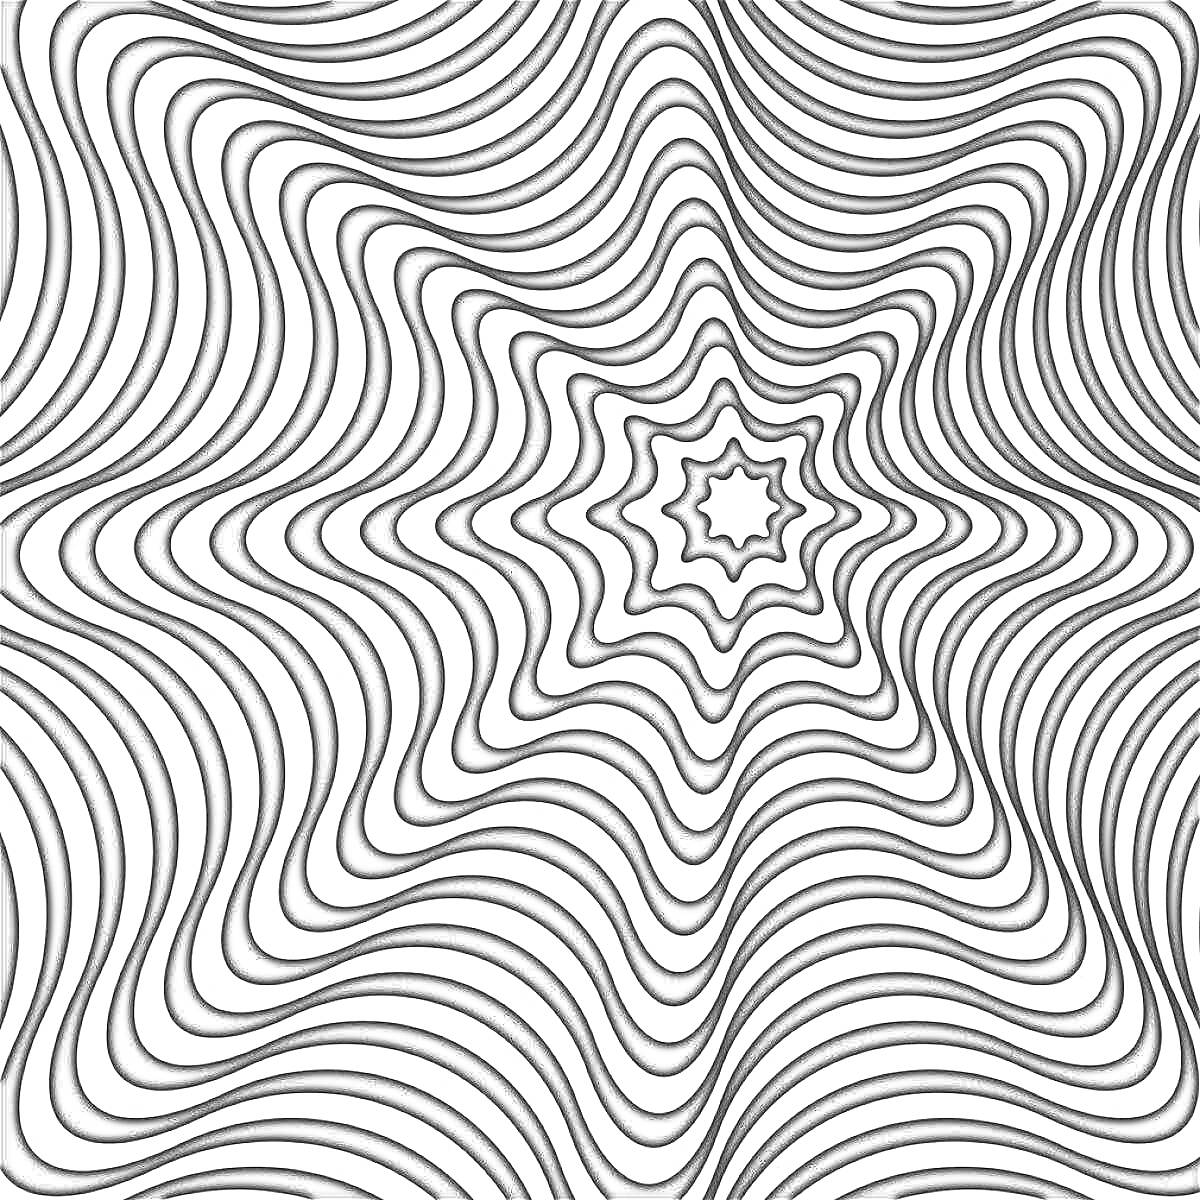 Пси-арт оптическая иллюзия с черно-белыми волнистыми линиями, создающими звездный паттерн